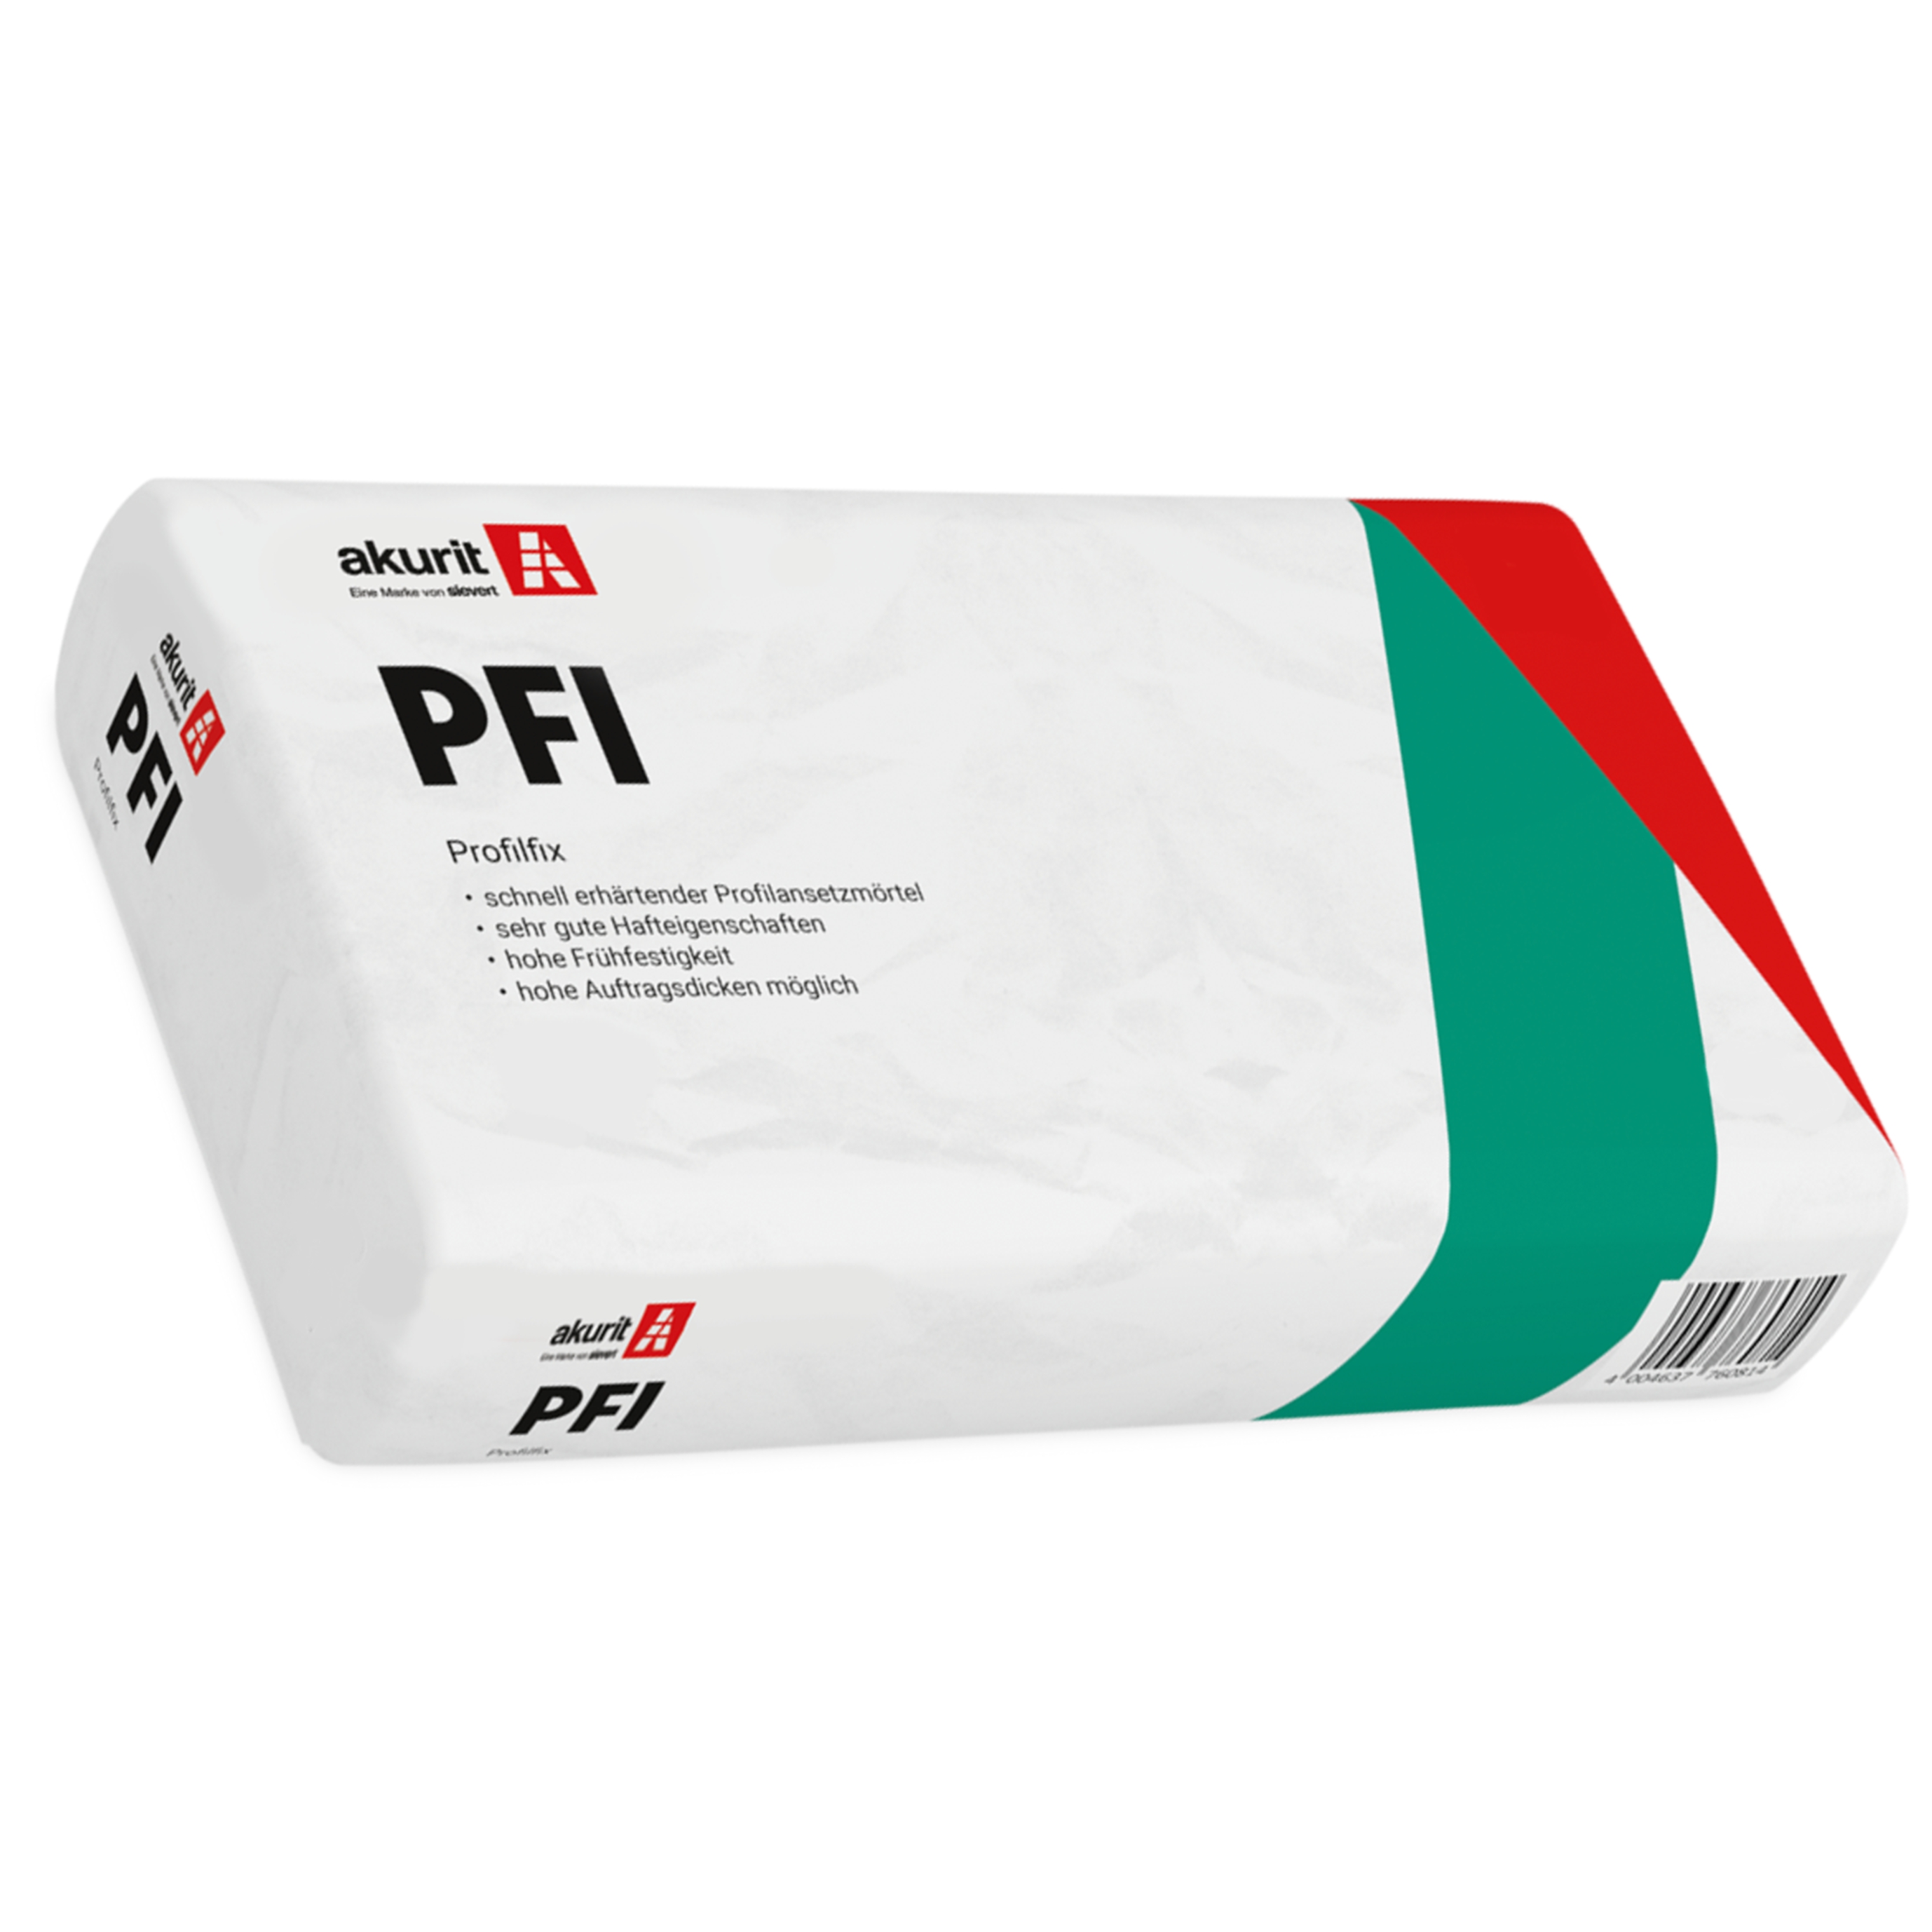 Akurit PFI Profilfix Ansetzmörtel  25 kg